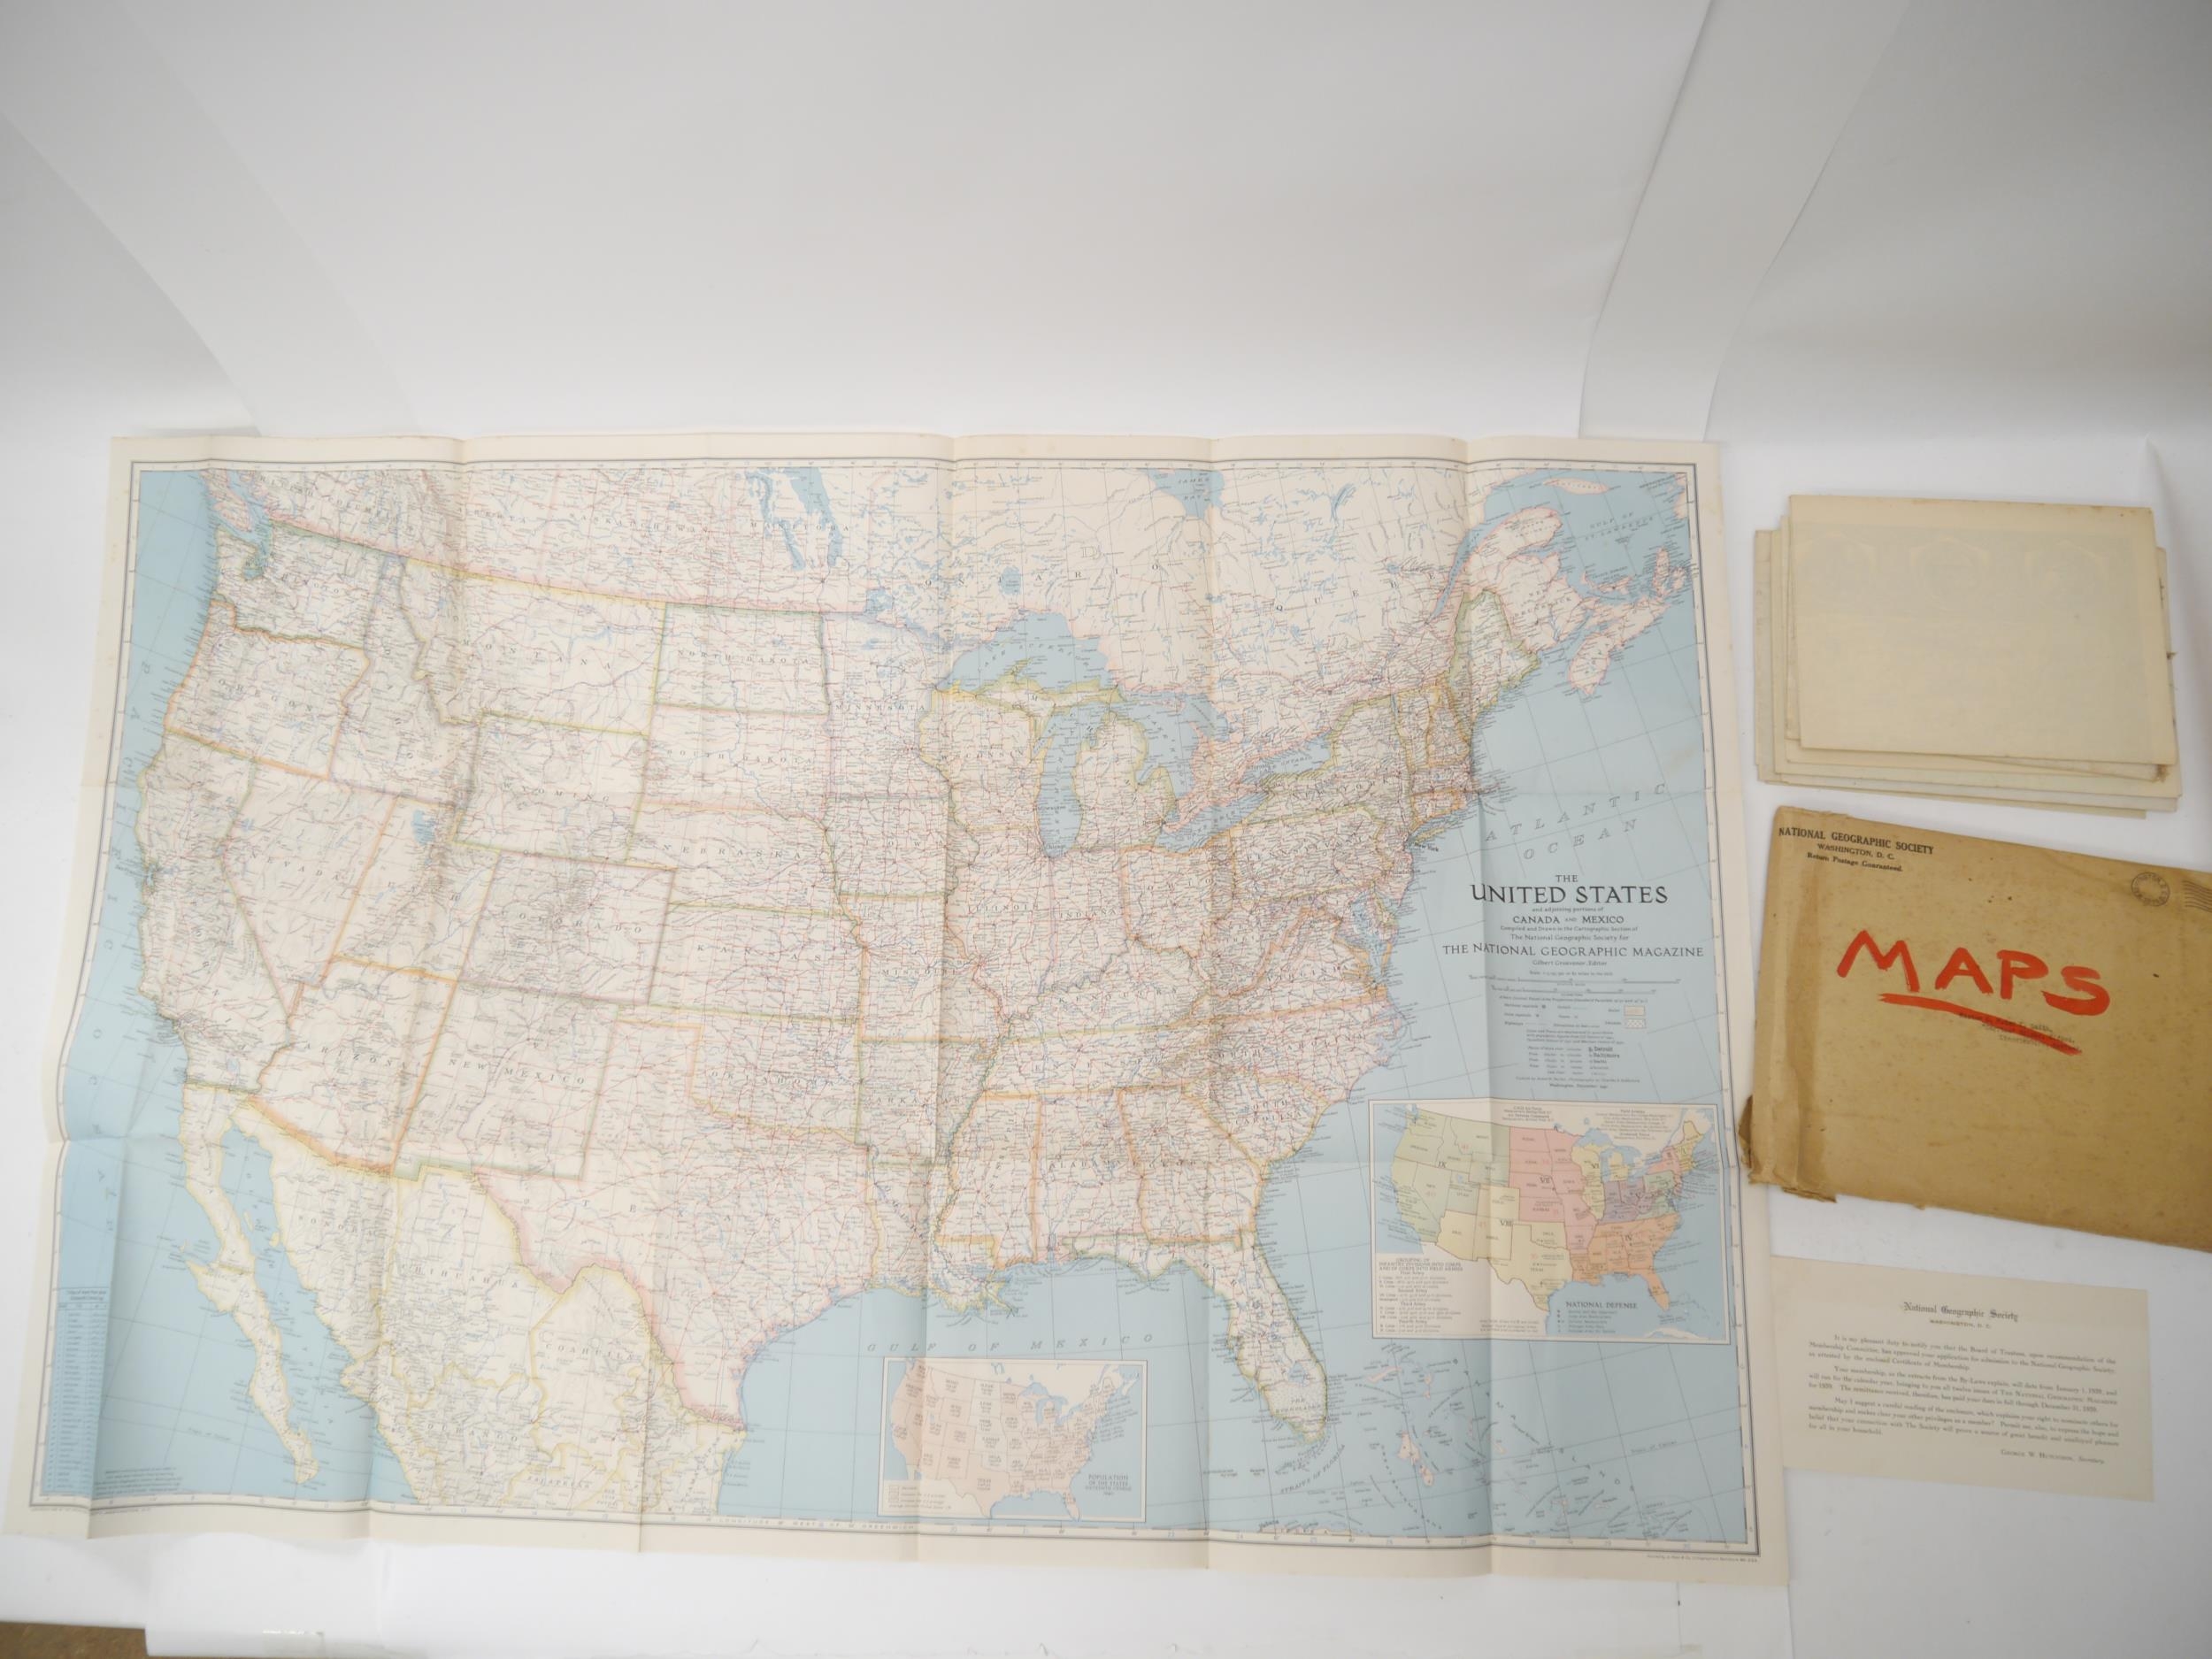 National Geographic Society (pub.): 'The Southwestern United States', 1940, large decorative folding